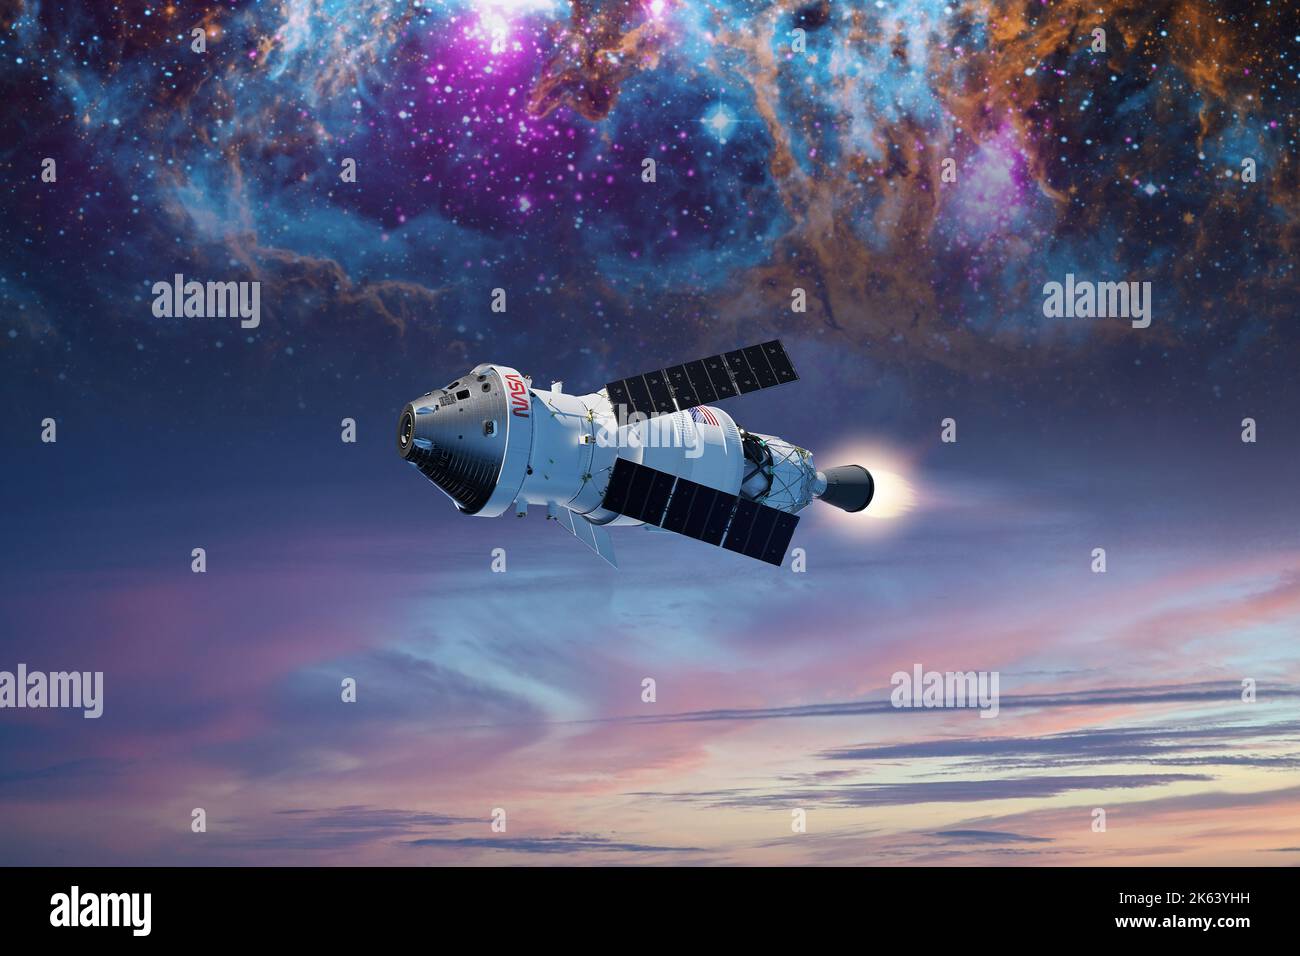 Sci-Fi-Konzept mit Orion-Raumsonde im Weltraum auf Nebelhintergrund. Elemente dieses Bildes, die von der NASA eingerichtet wurden. Stockfoto